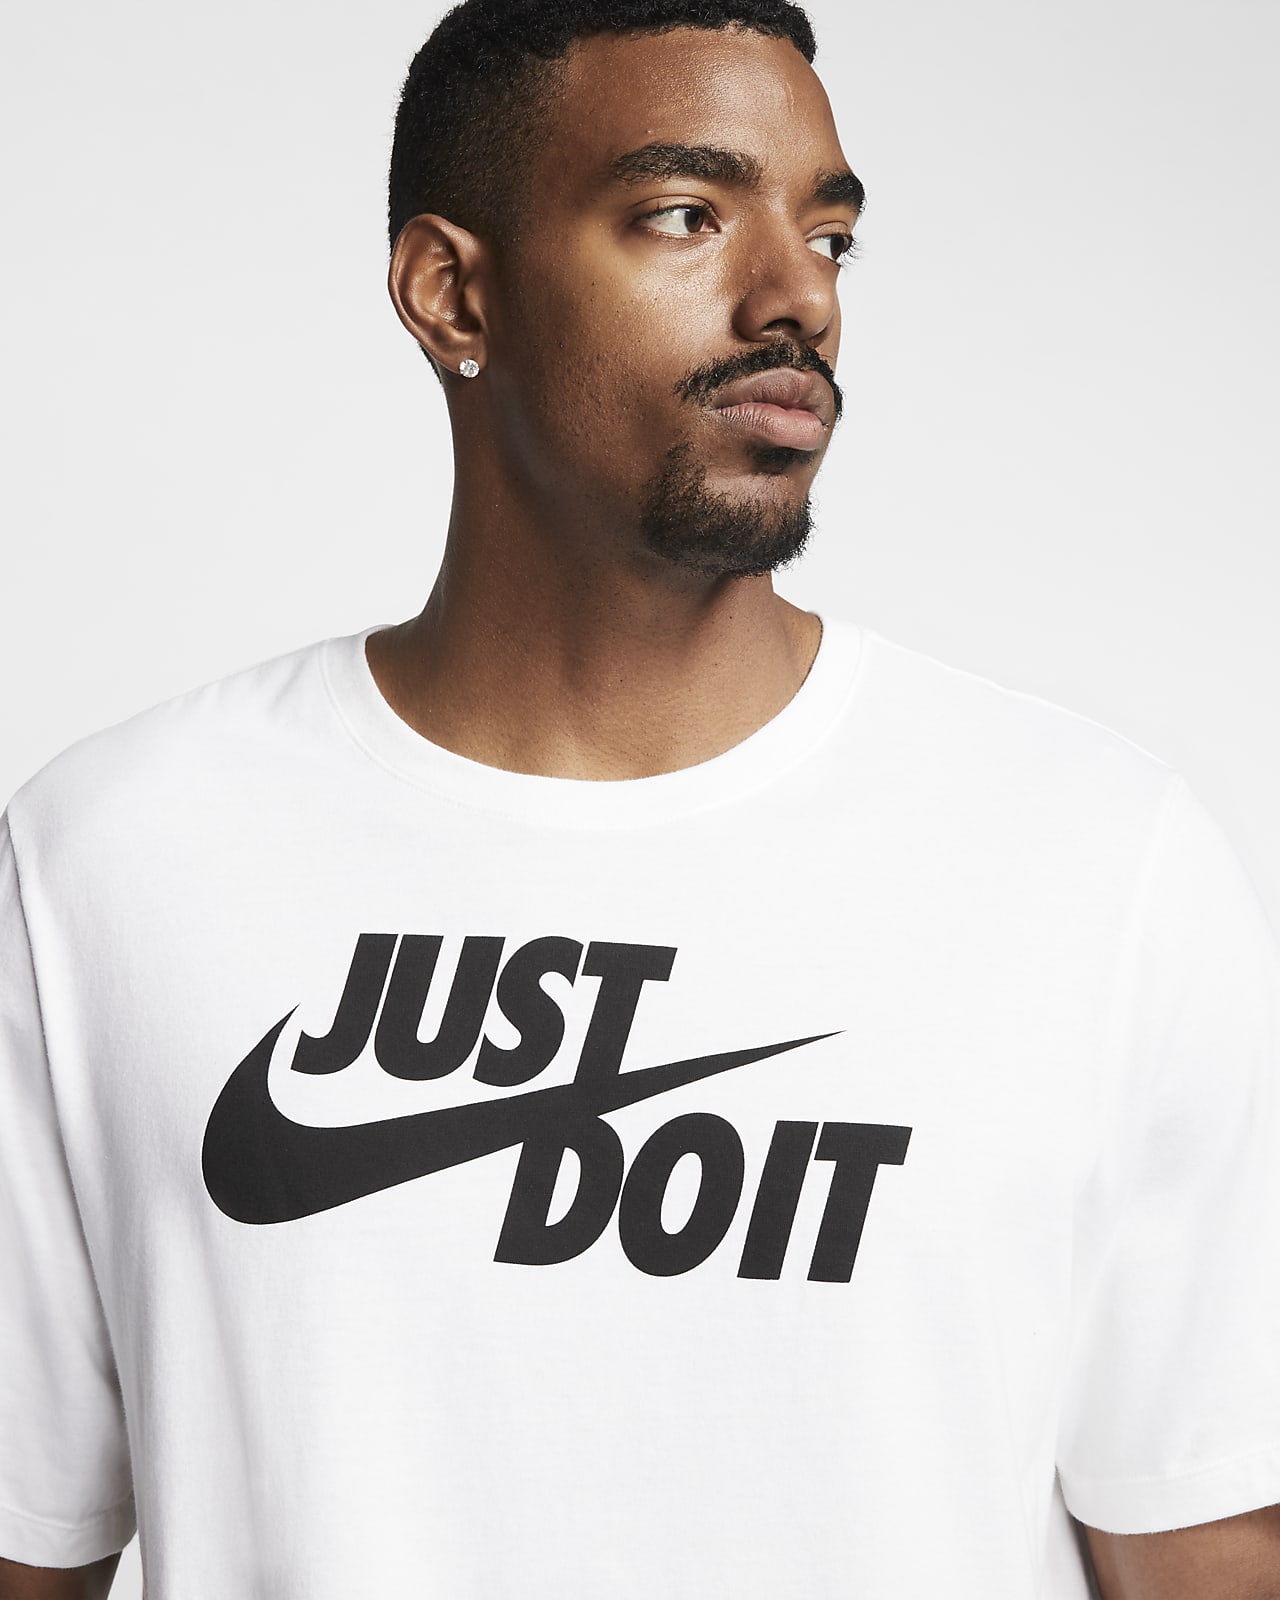 Nike Men's Sportswear JDI Verbiage Tee-White, Size: 3XL, Cotton